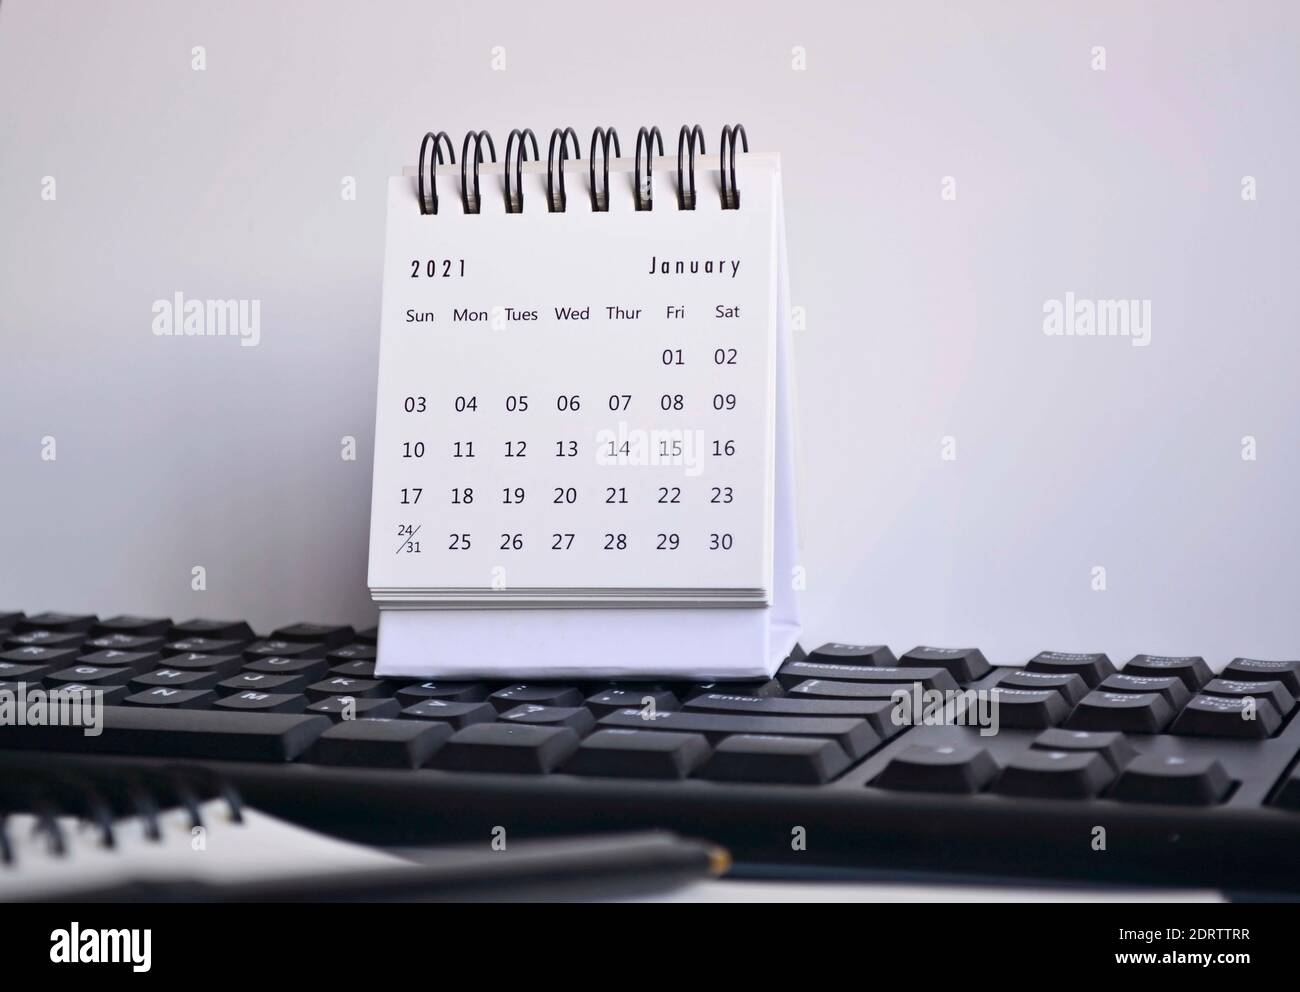 Calendrier blanc de janvier 2021 sur un clavier flou, suspension et ordinateur portable avec arrière-plan blanc. Concept de la nouvelle année Banque D'Images